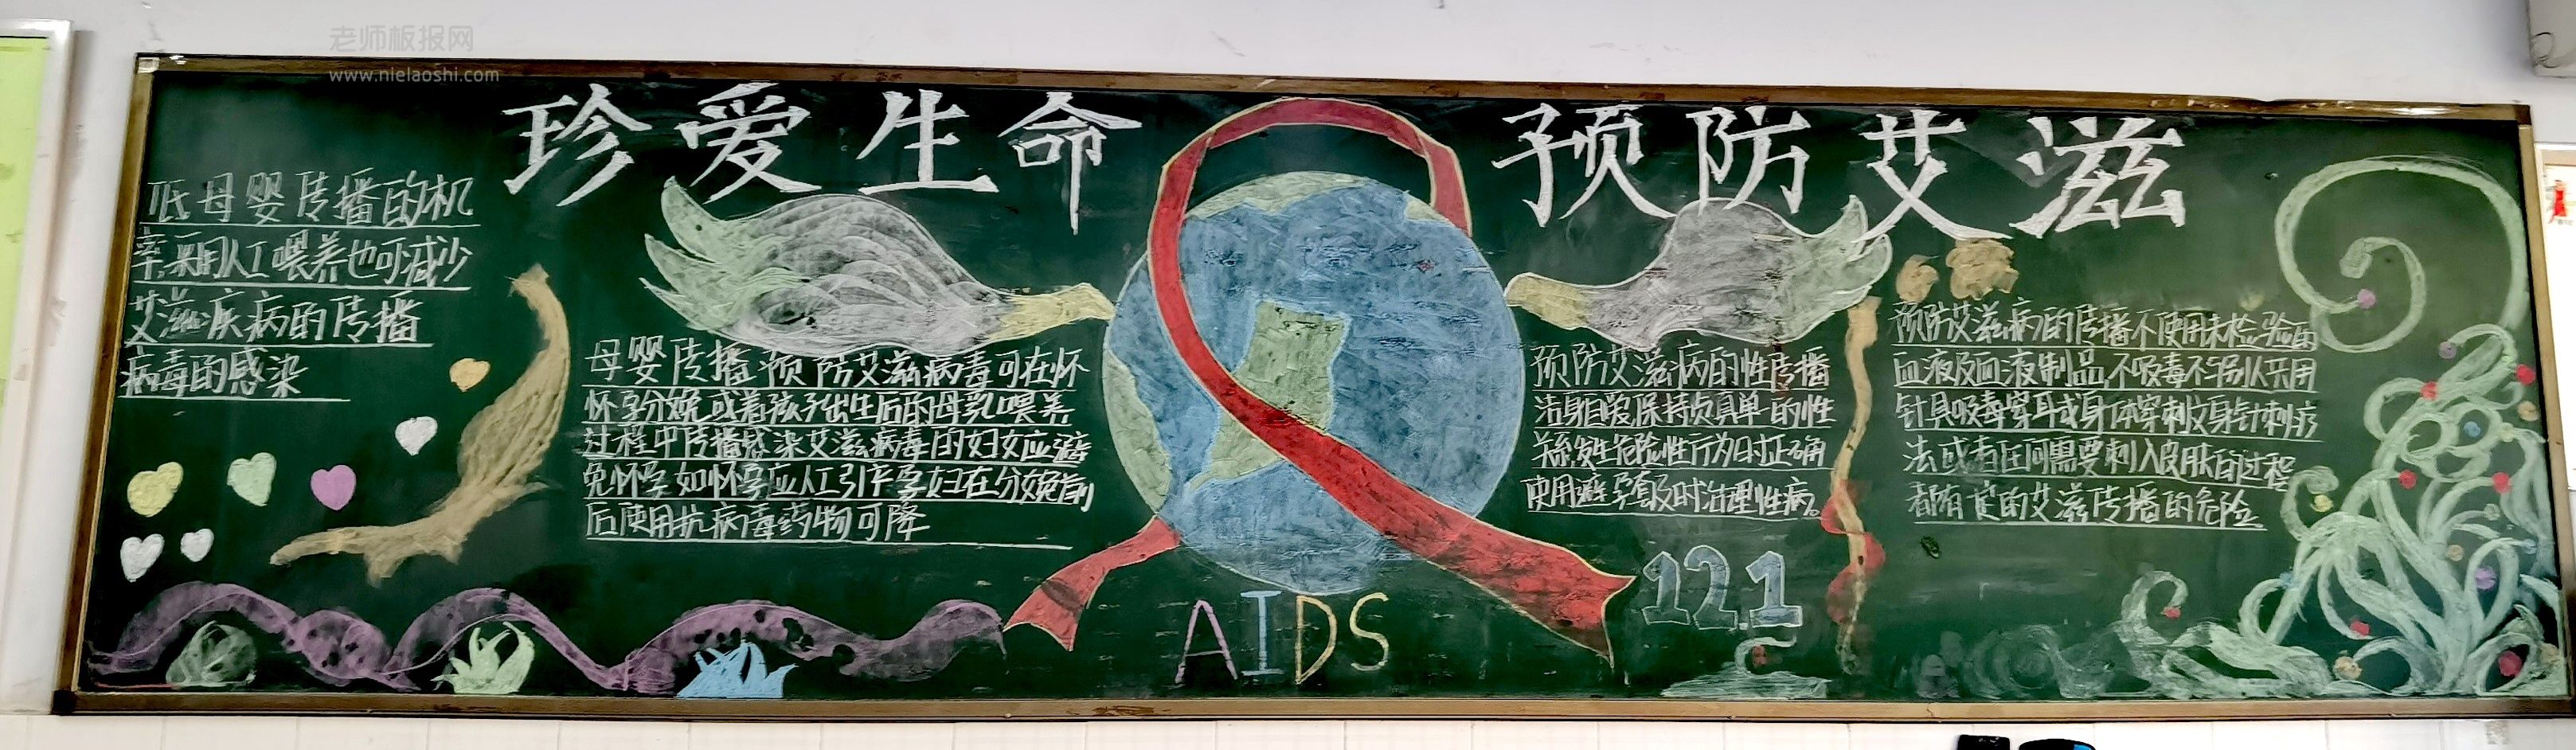 珍爱生命预防艾滋黑板报图片 什么是艾滋病 如何预防艾滋病